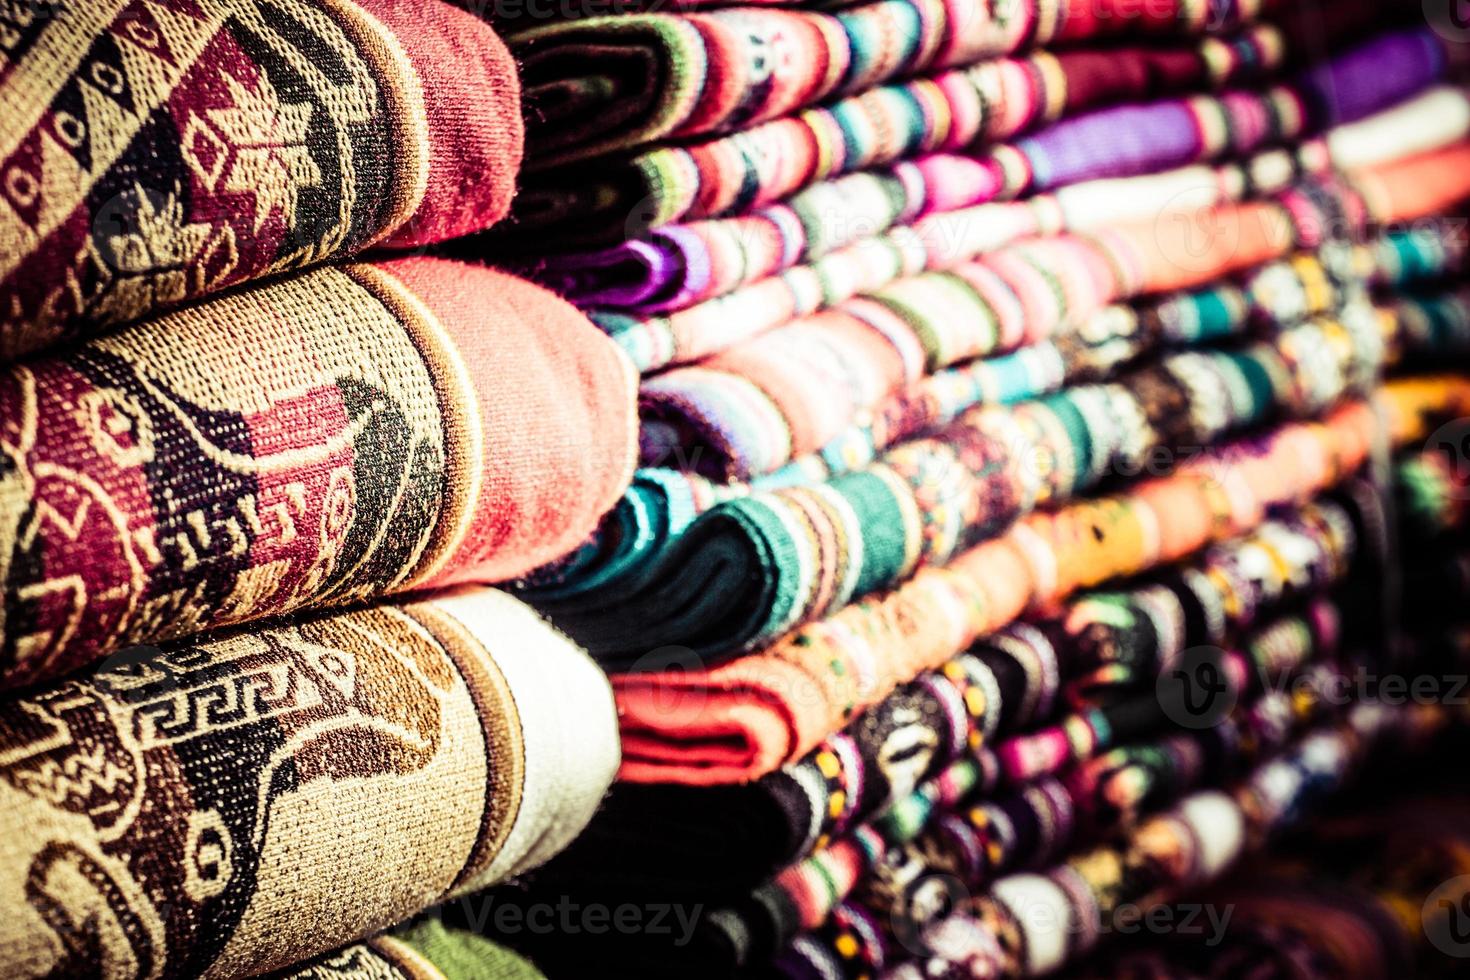 färgrikt tyg på marknaden i Peru, Sydamerika foto